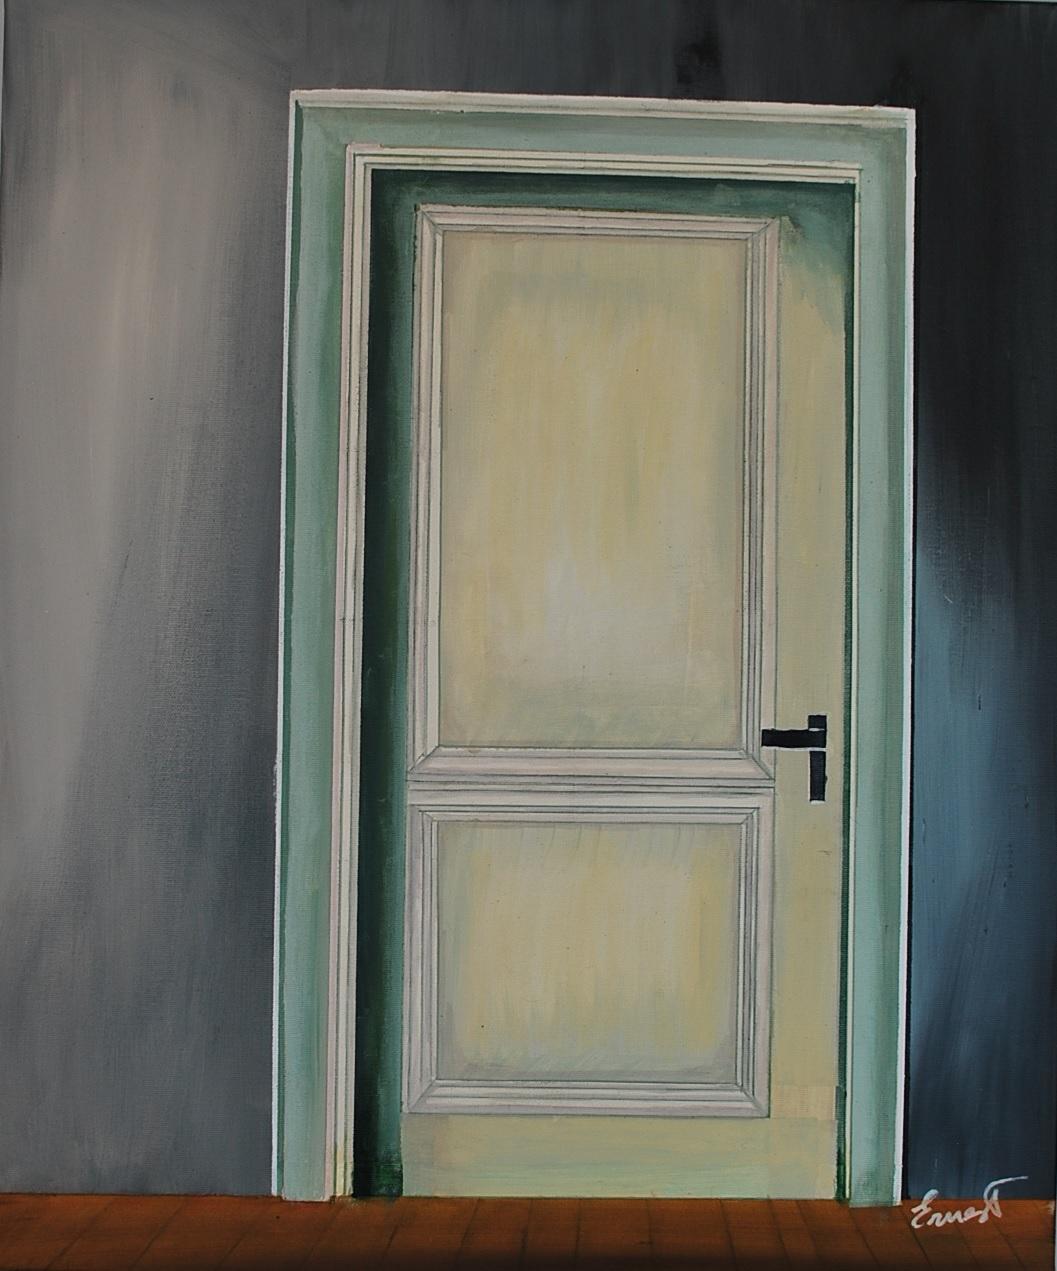 Ernest Carneado Ferreri Figurative Painting – ¿Qué hay detrás de la puerta?